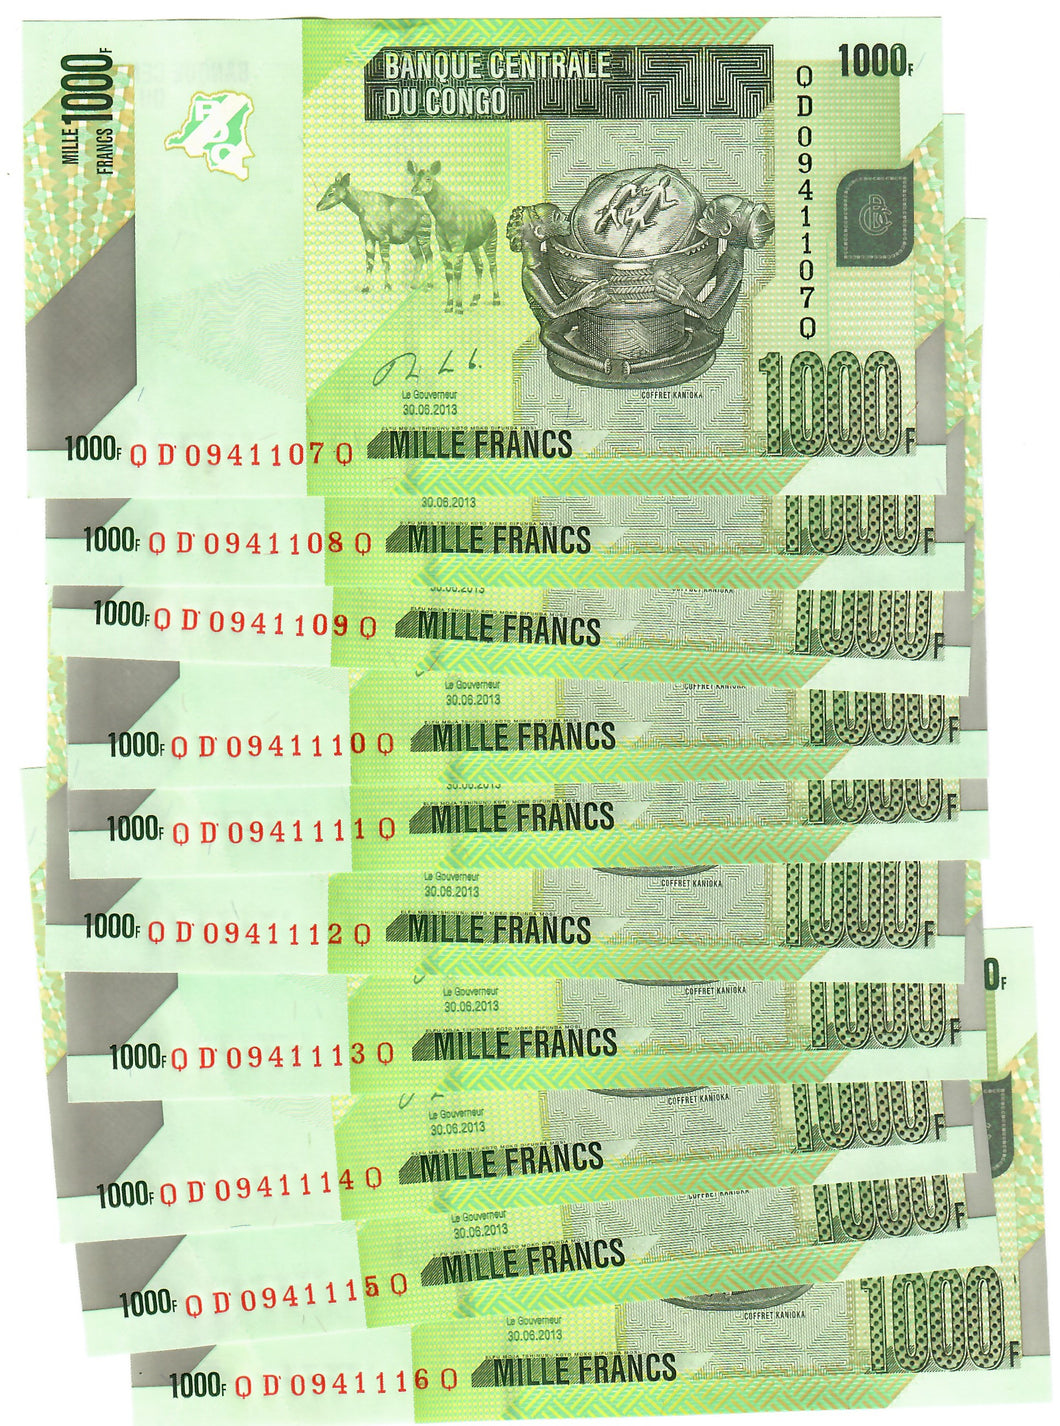 Democratic Republic of Congo 10x 1000 Francs 2013 UNC